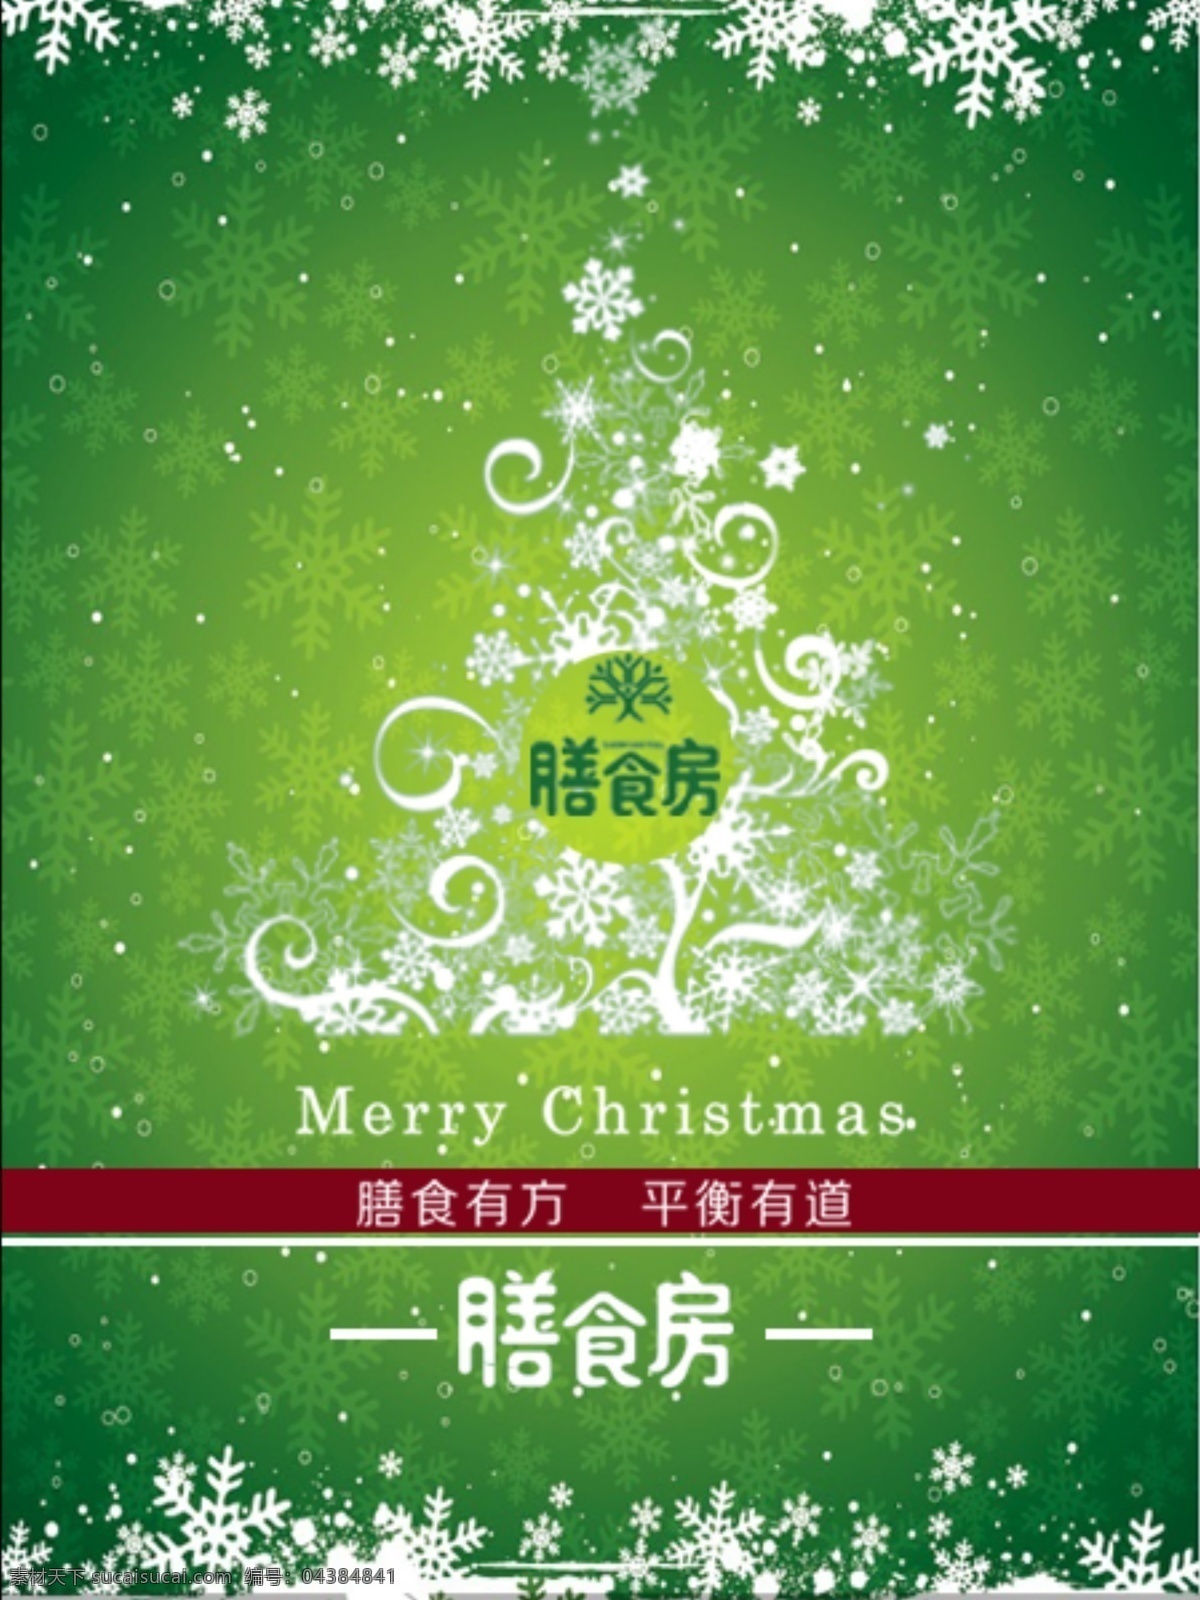 圣诞节贺卡 圣诞节 贺卡 淘宝素材 淘宝设计 淘宝模板下载 绿色